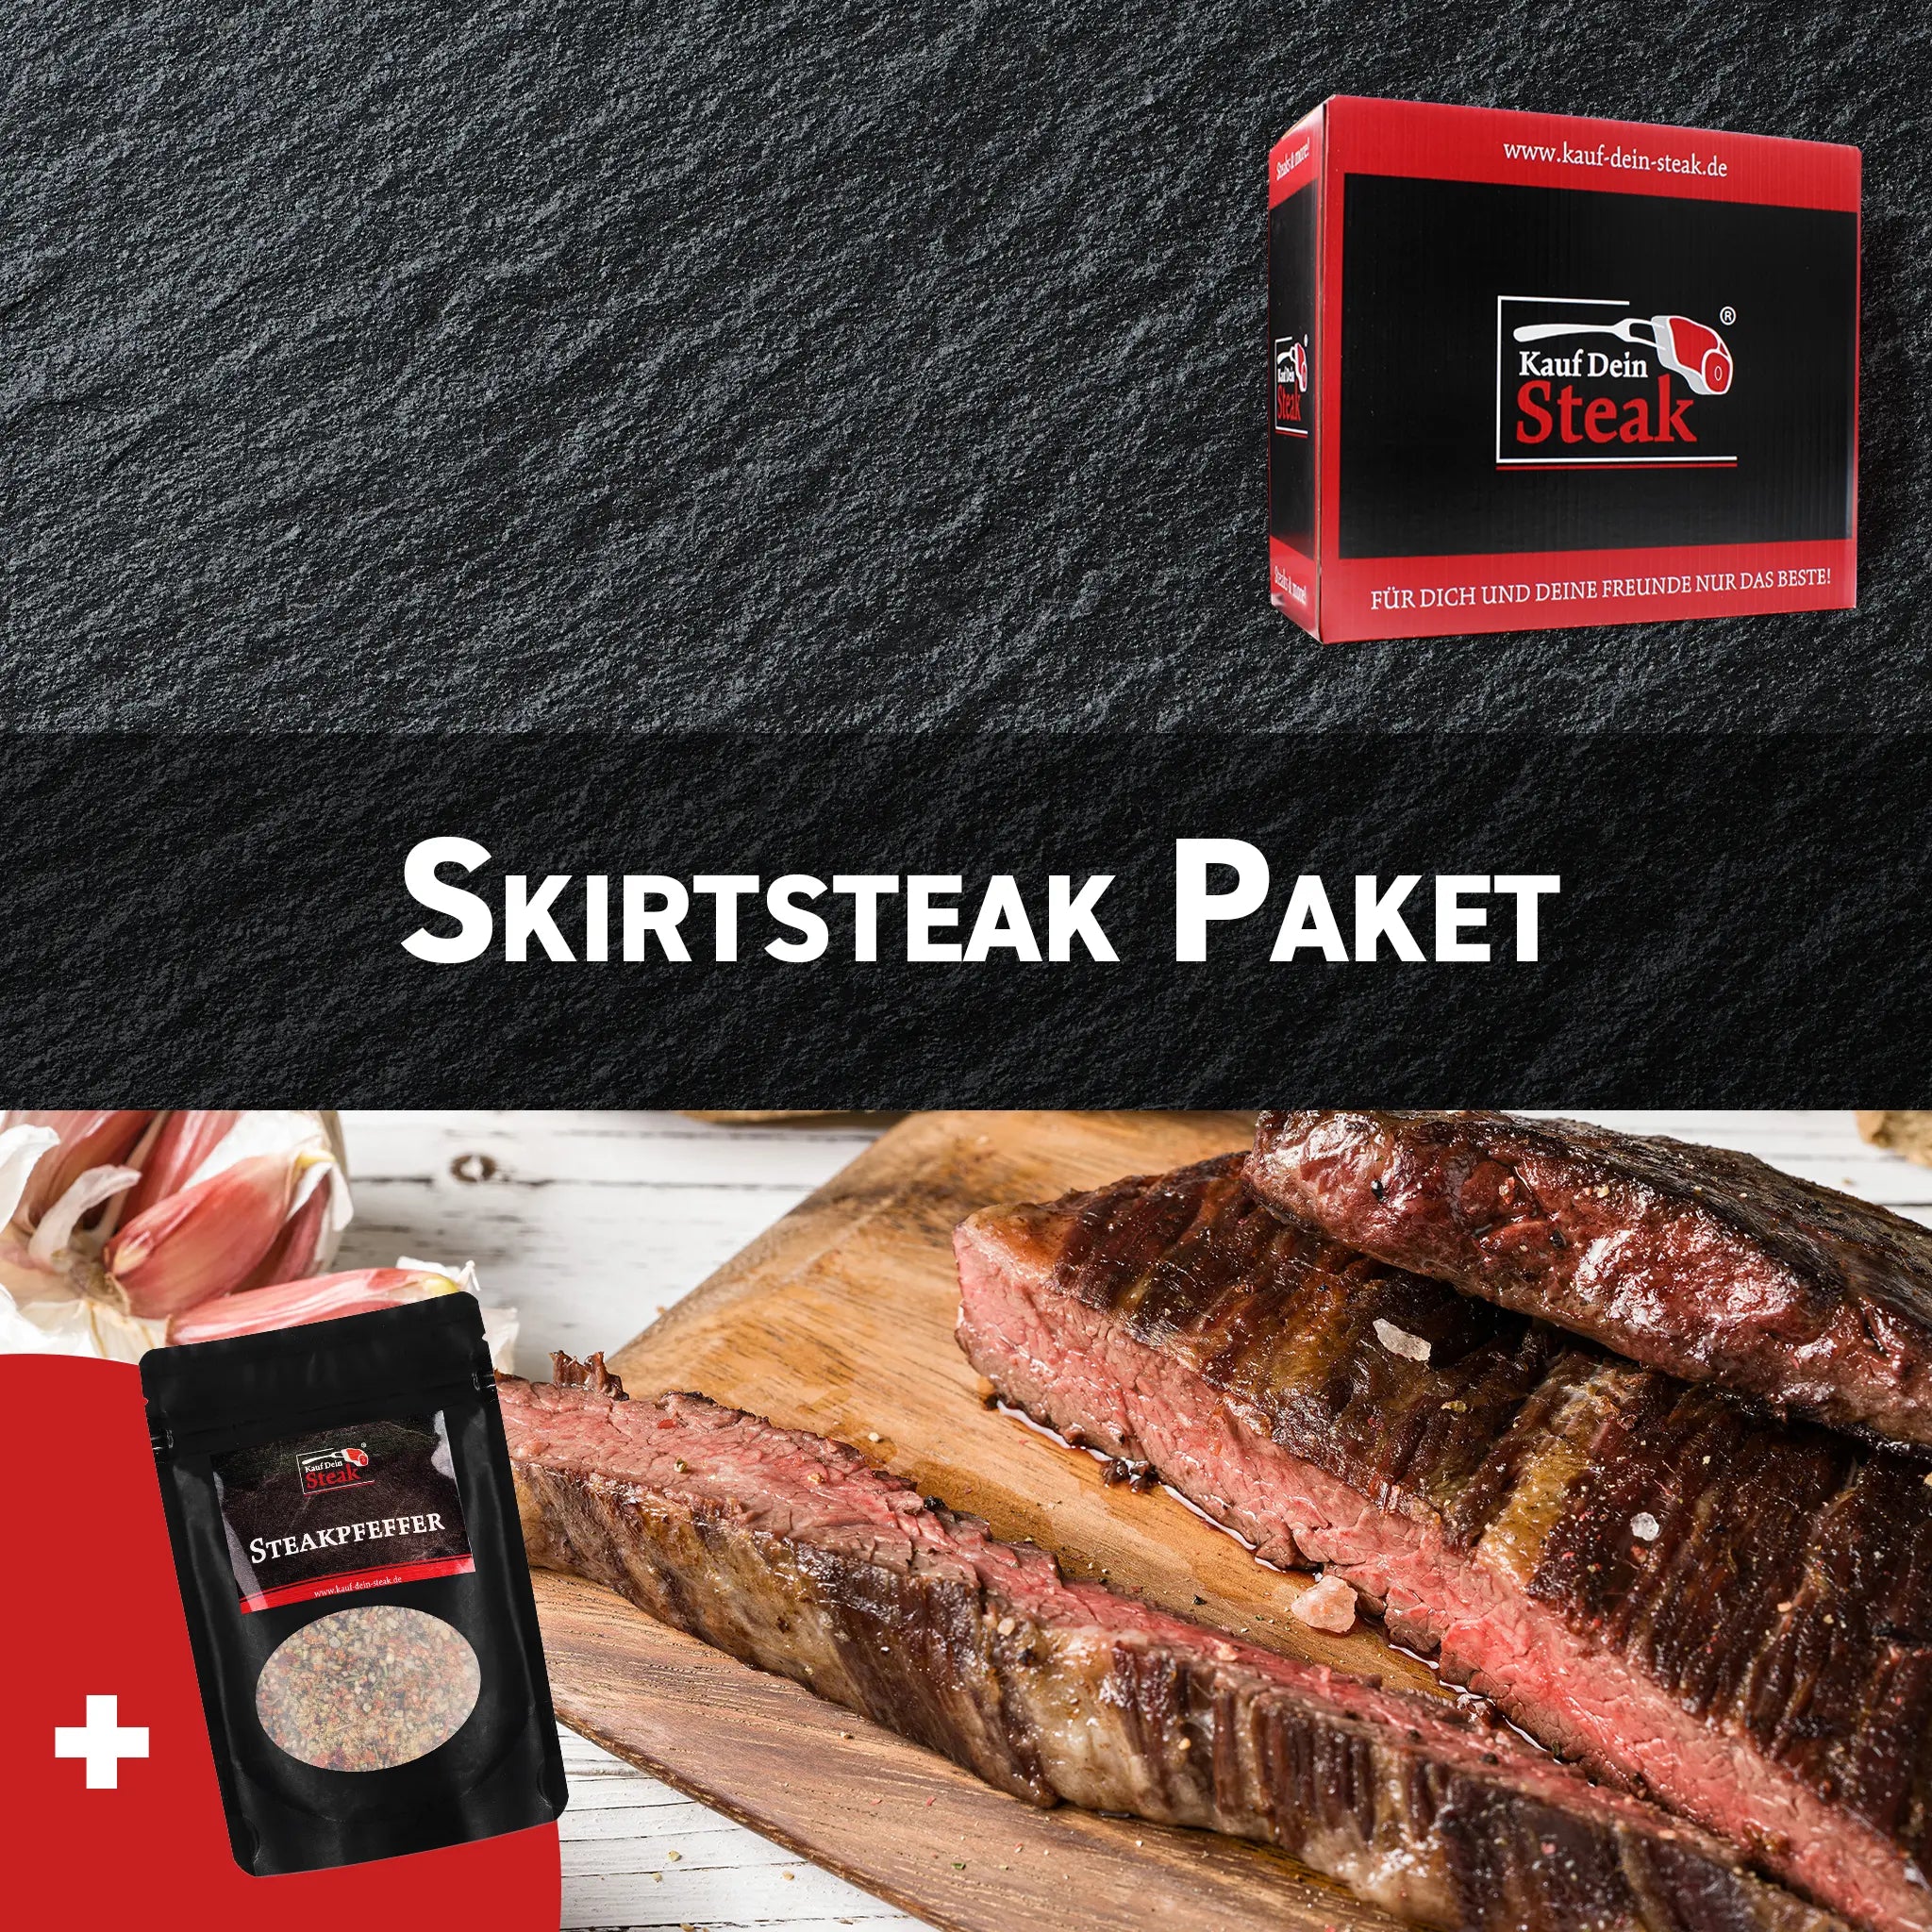 6 x Skirtsteak + Steakpfeffer